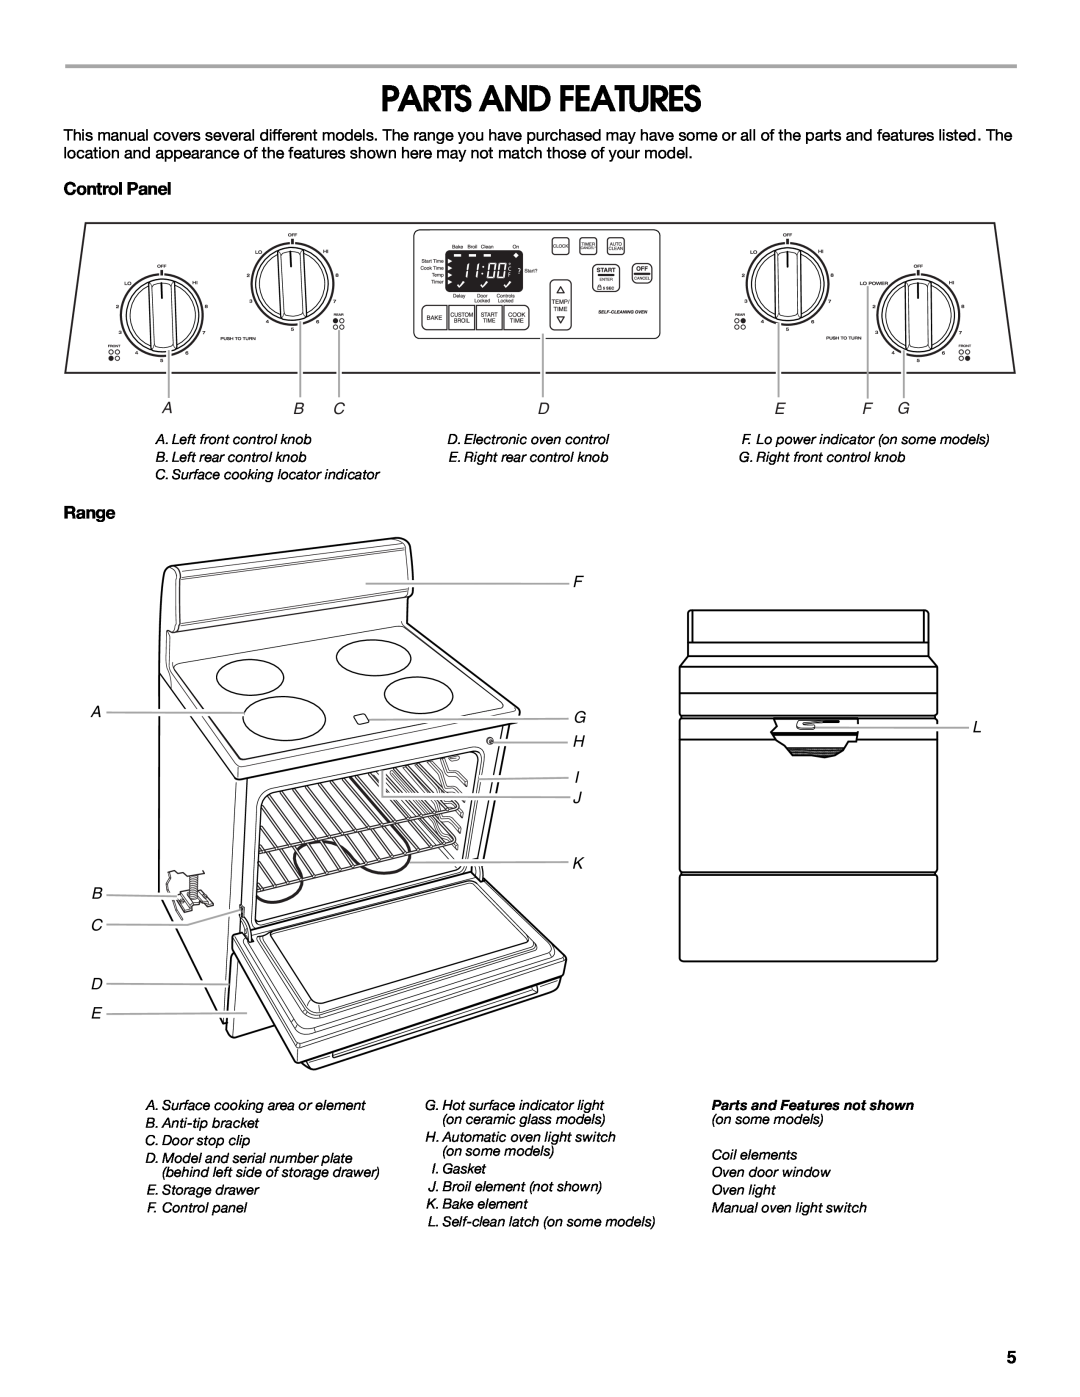 Roper W10017690 manual Parts And Features, Control Panel, Range, I J K B C D E 